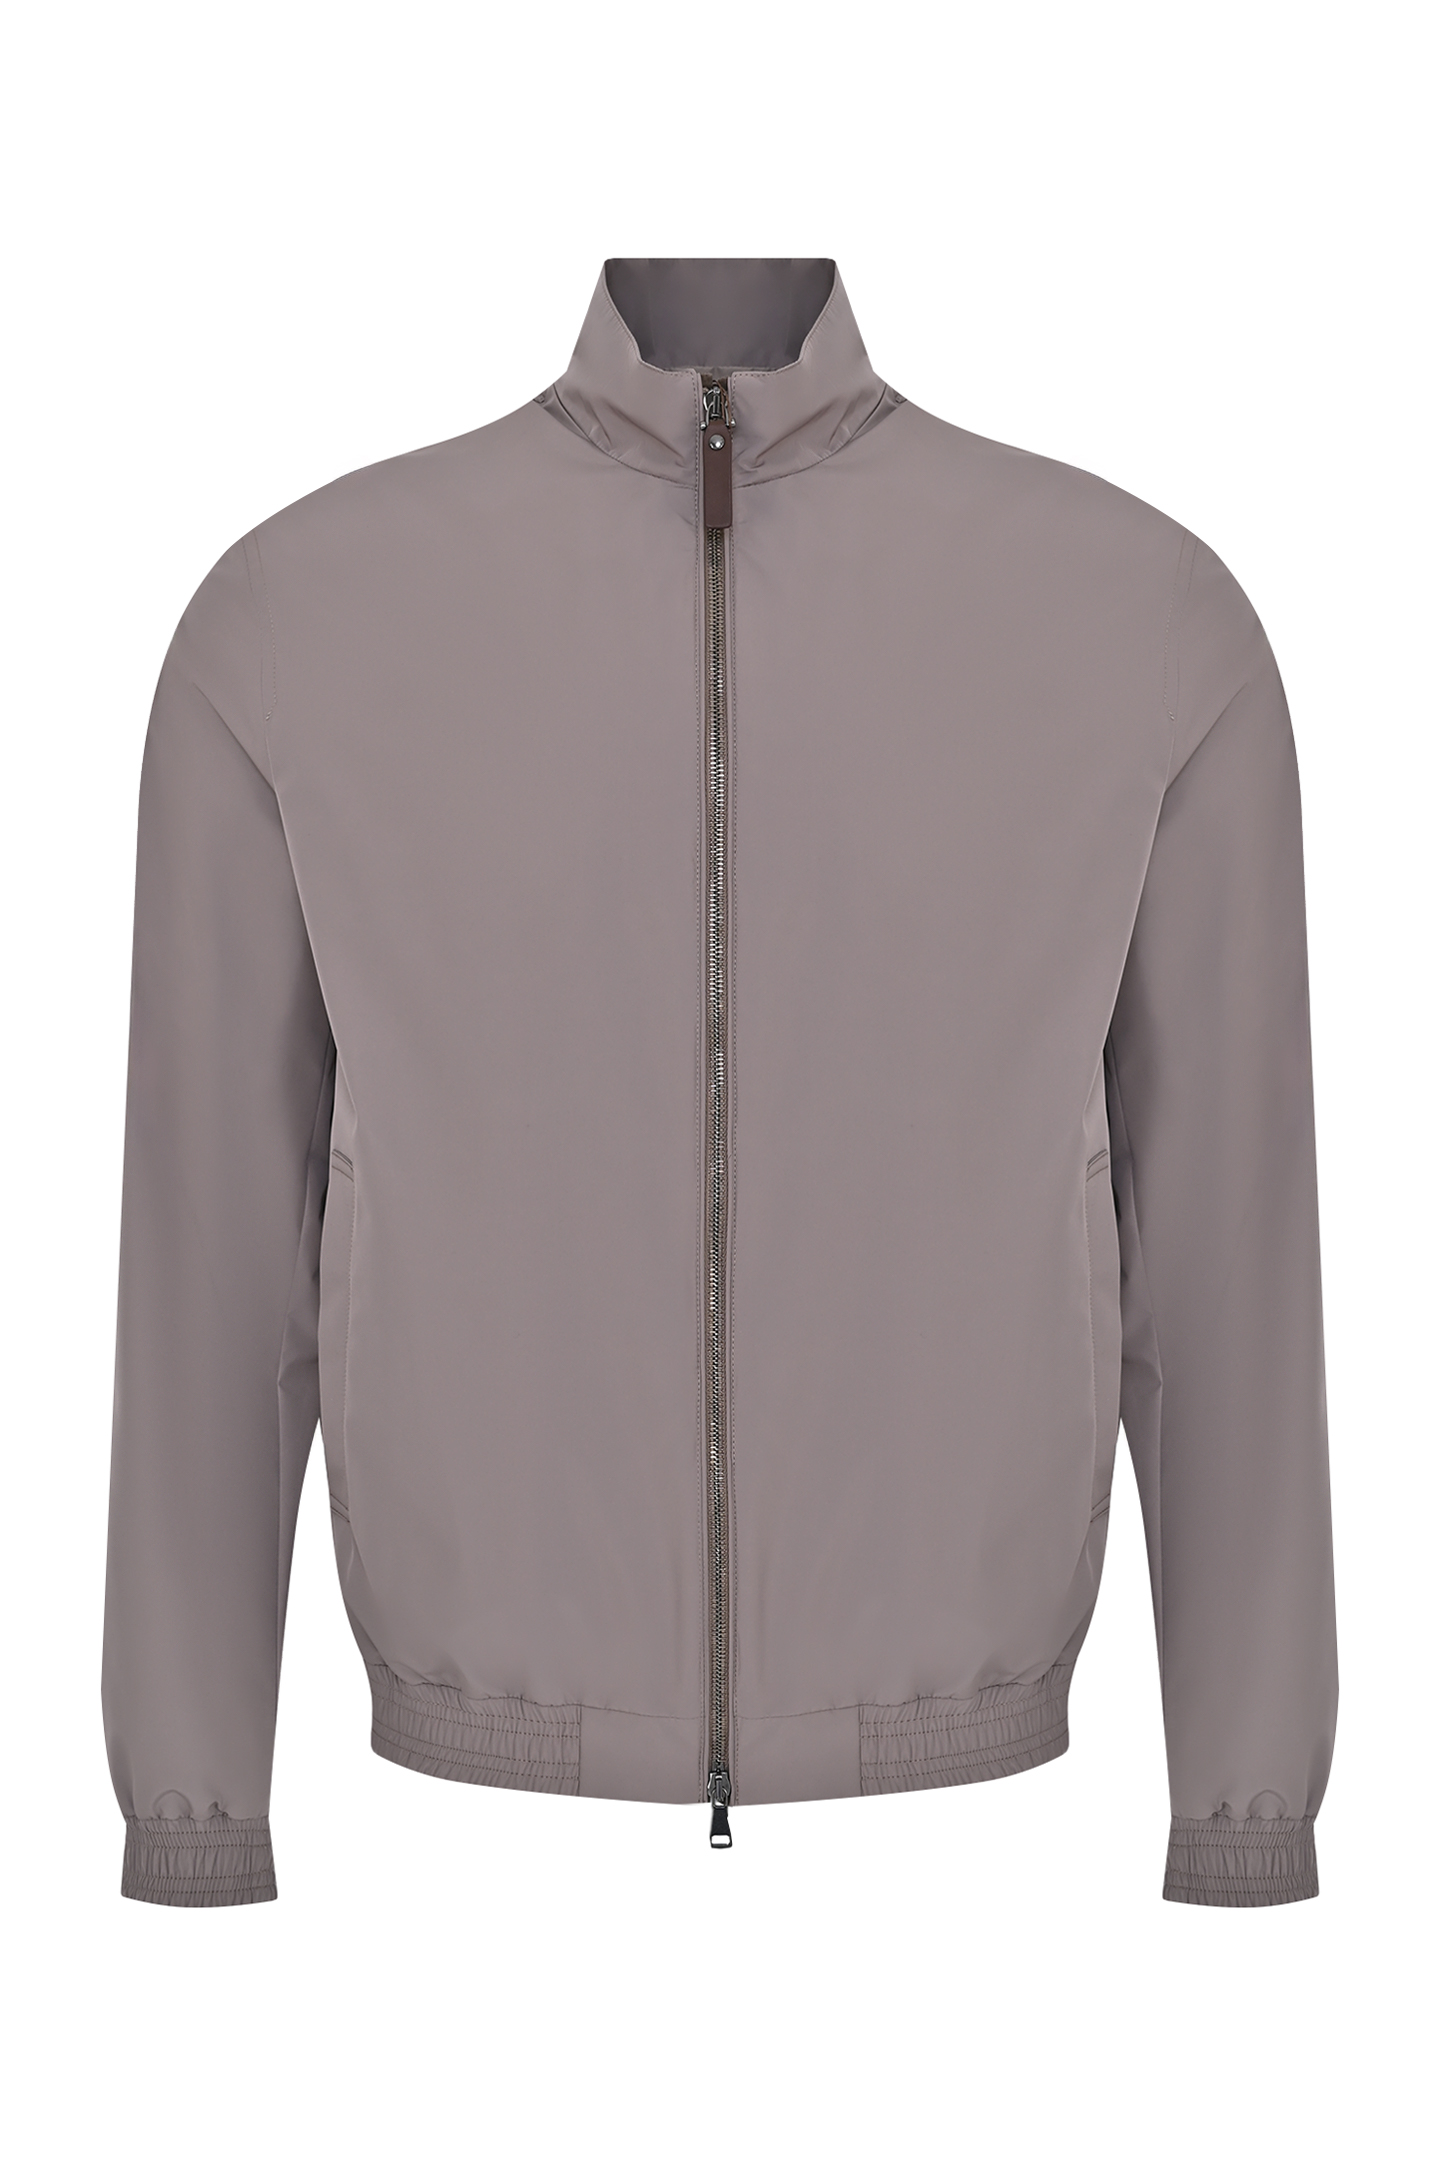 Куртка из полиэстера с карманами CANALI SG02321 O40871, цвет: Светло-бежевый, Мужской